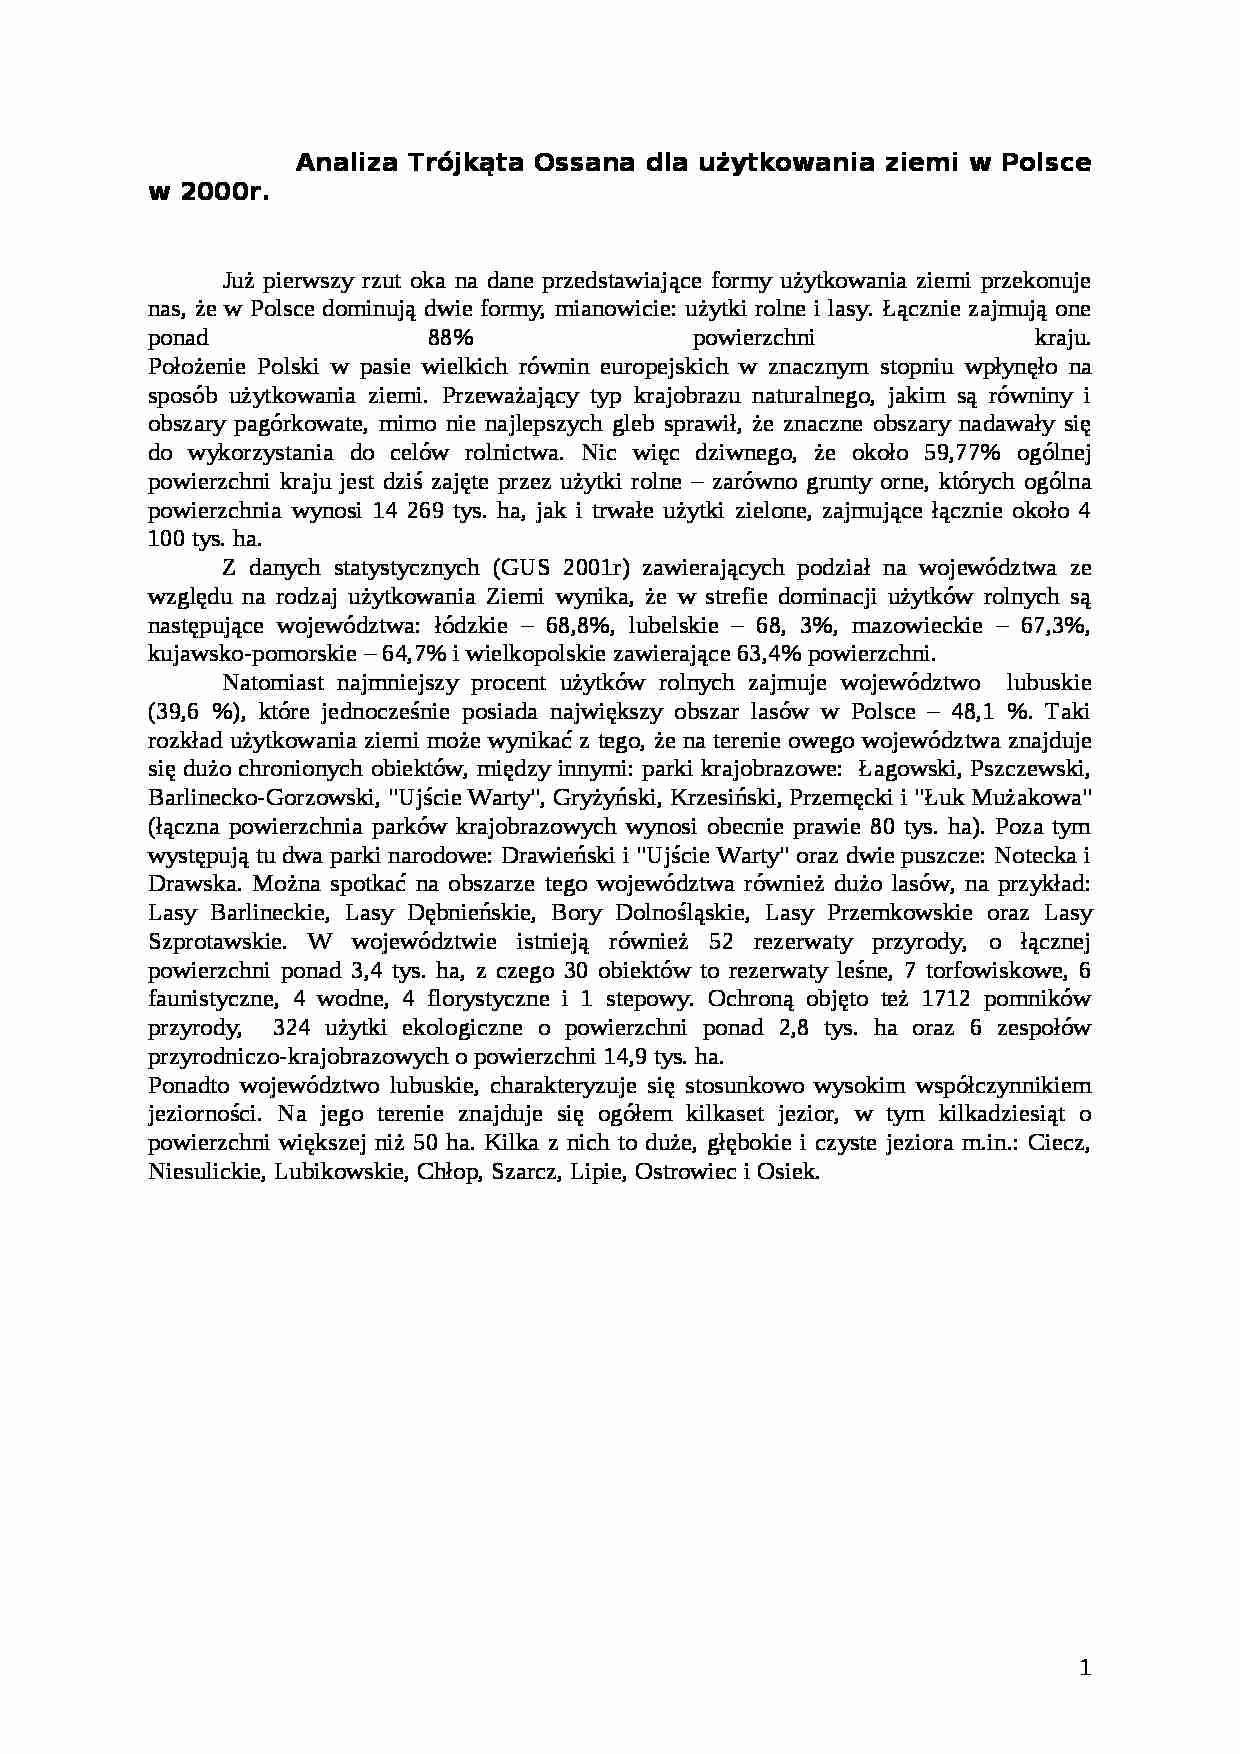 Analiza Trójkąta Ossana dla użytkowania ziemi w Polsce w 2000 r. - strona 1